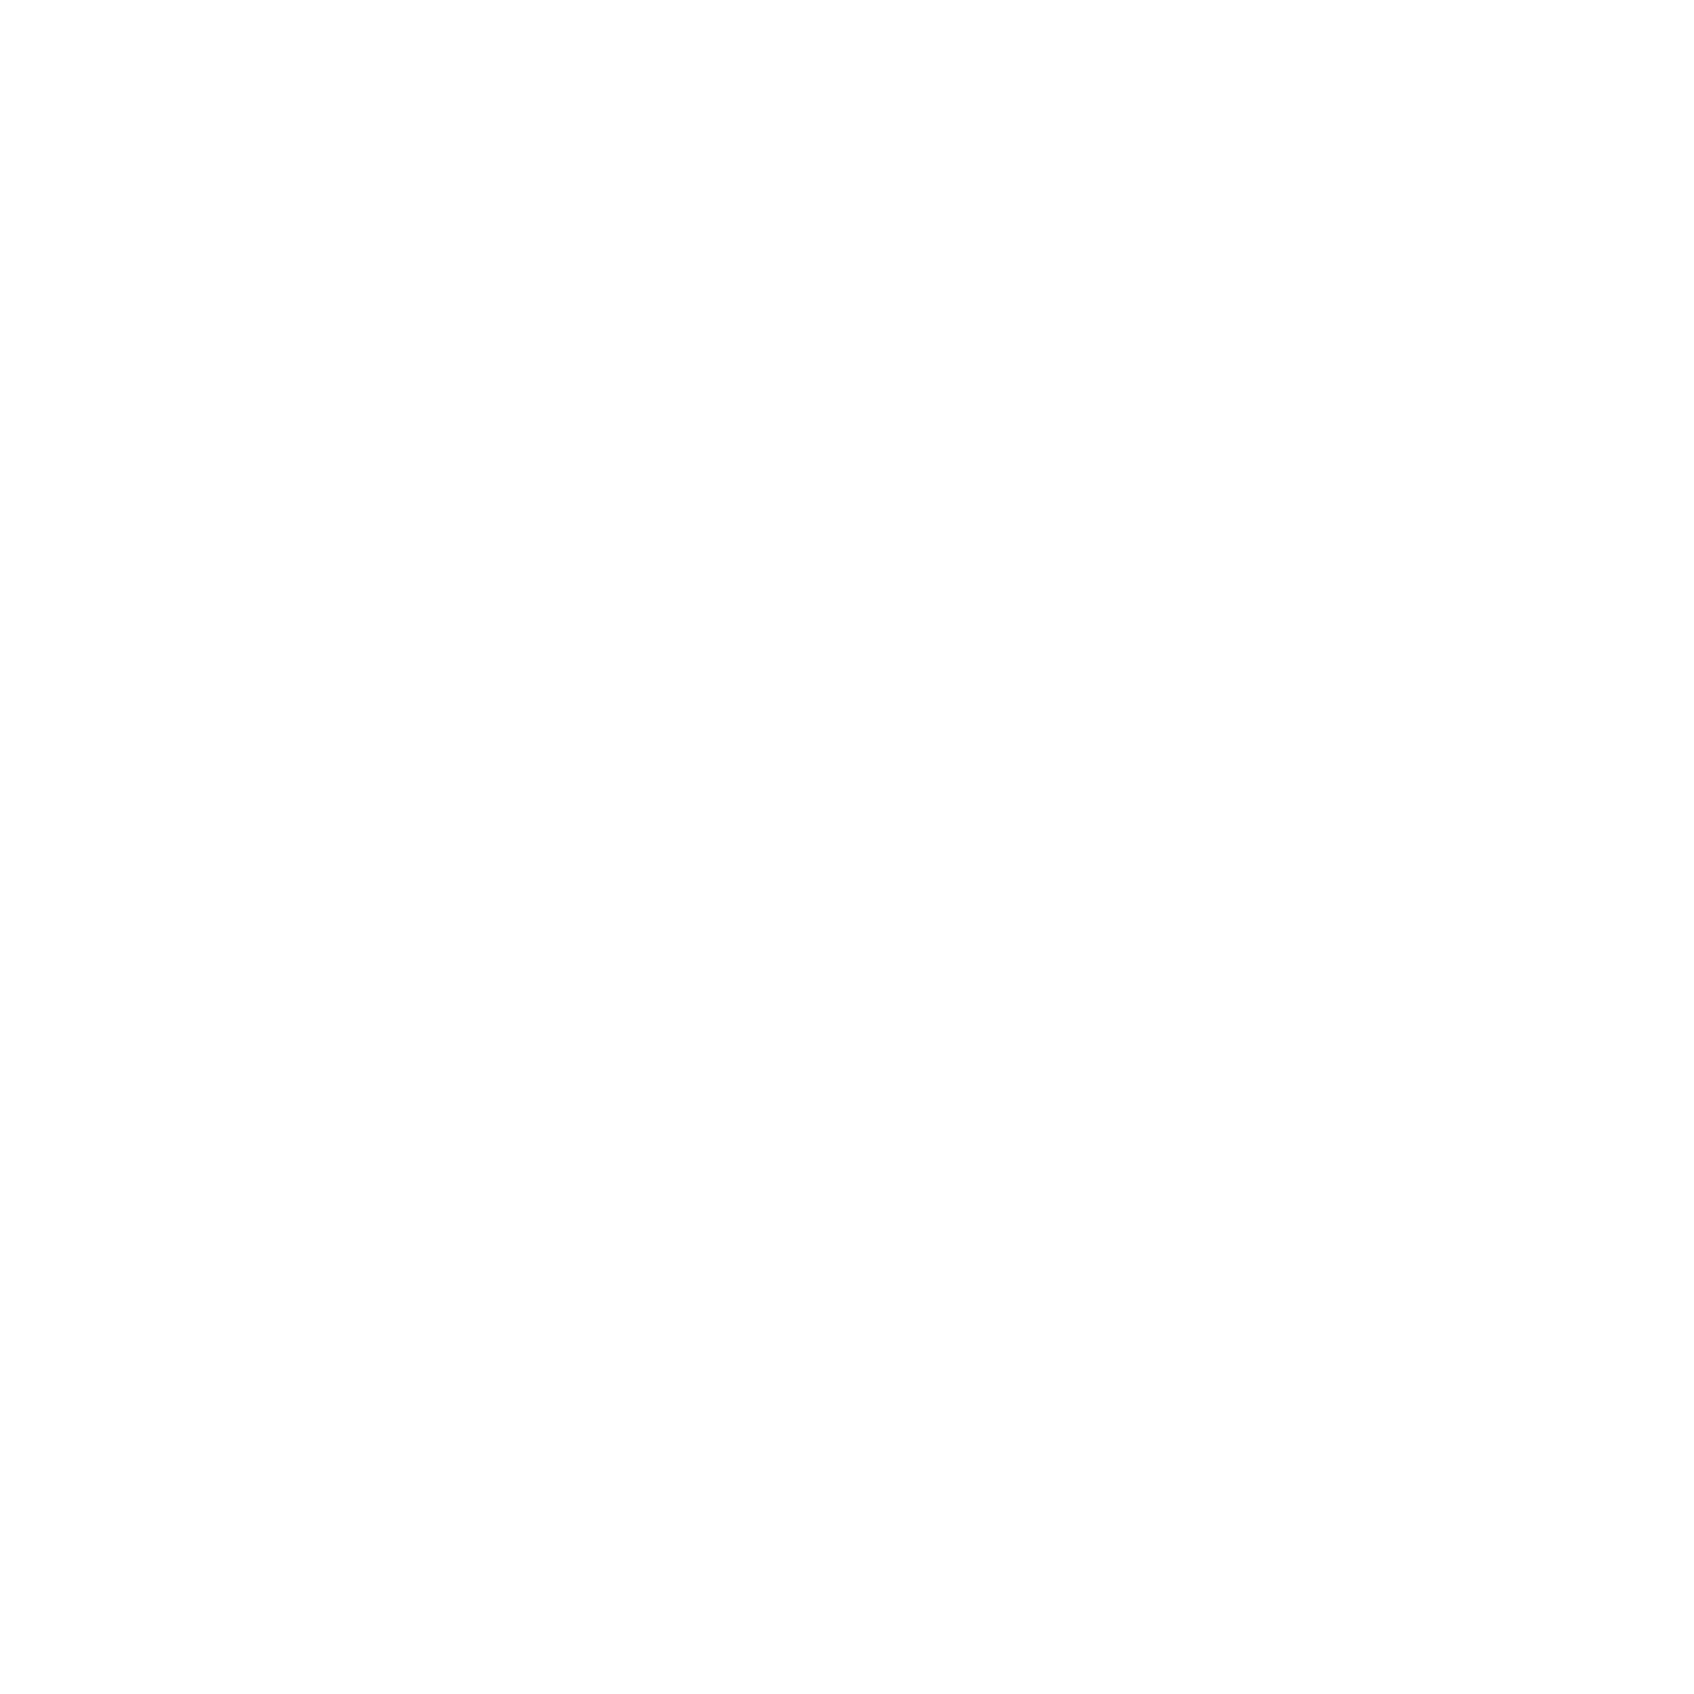 Arthur A. Dugoni School of Dentistry